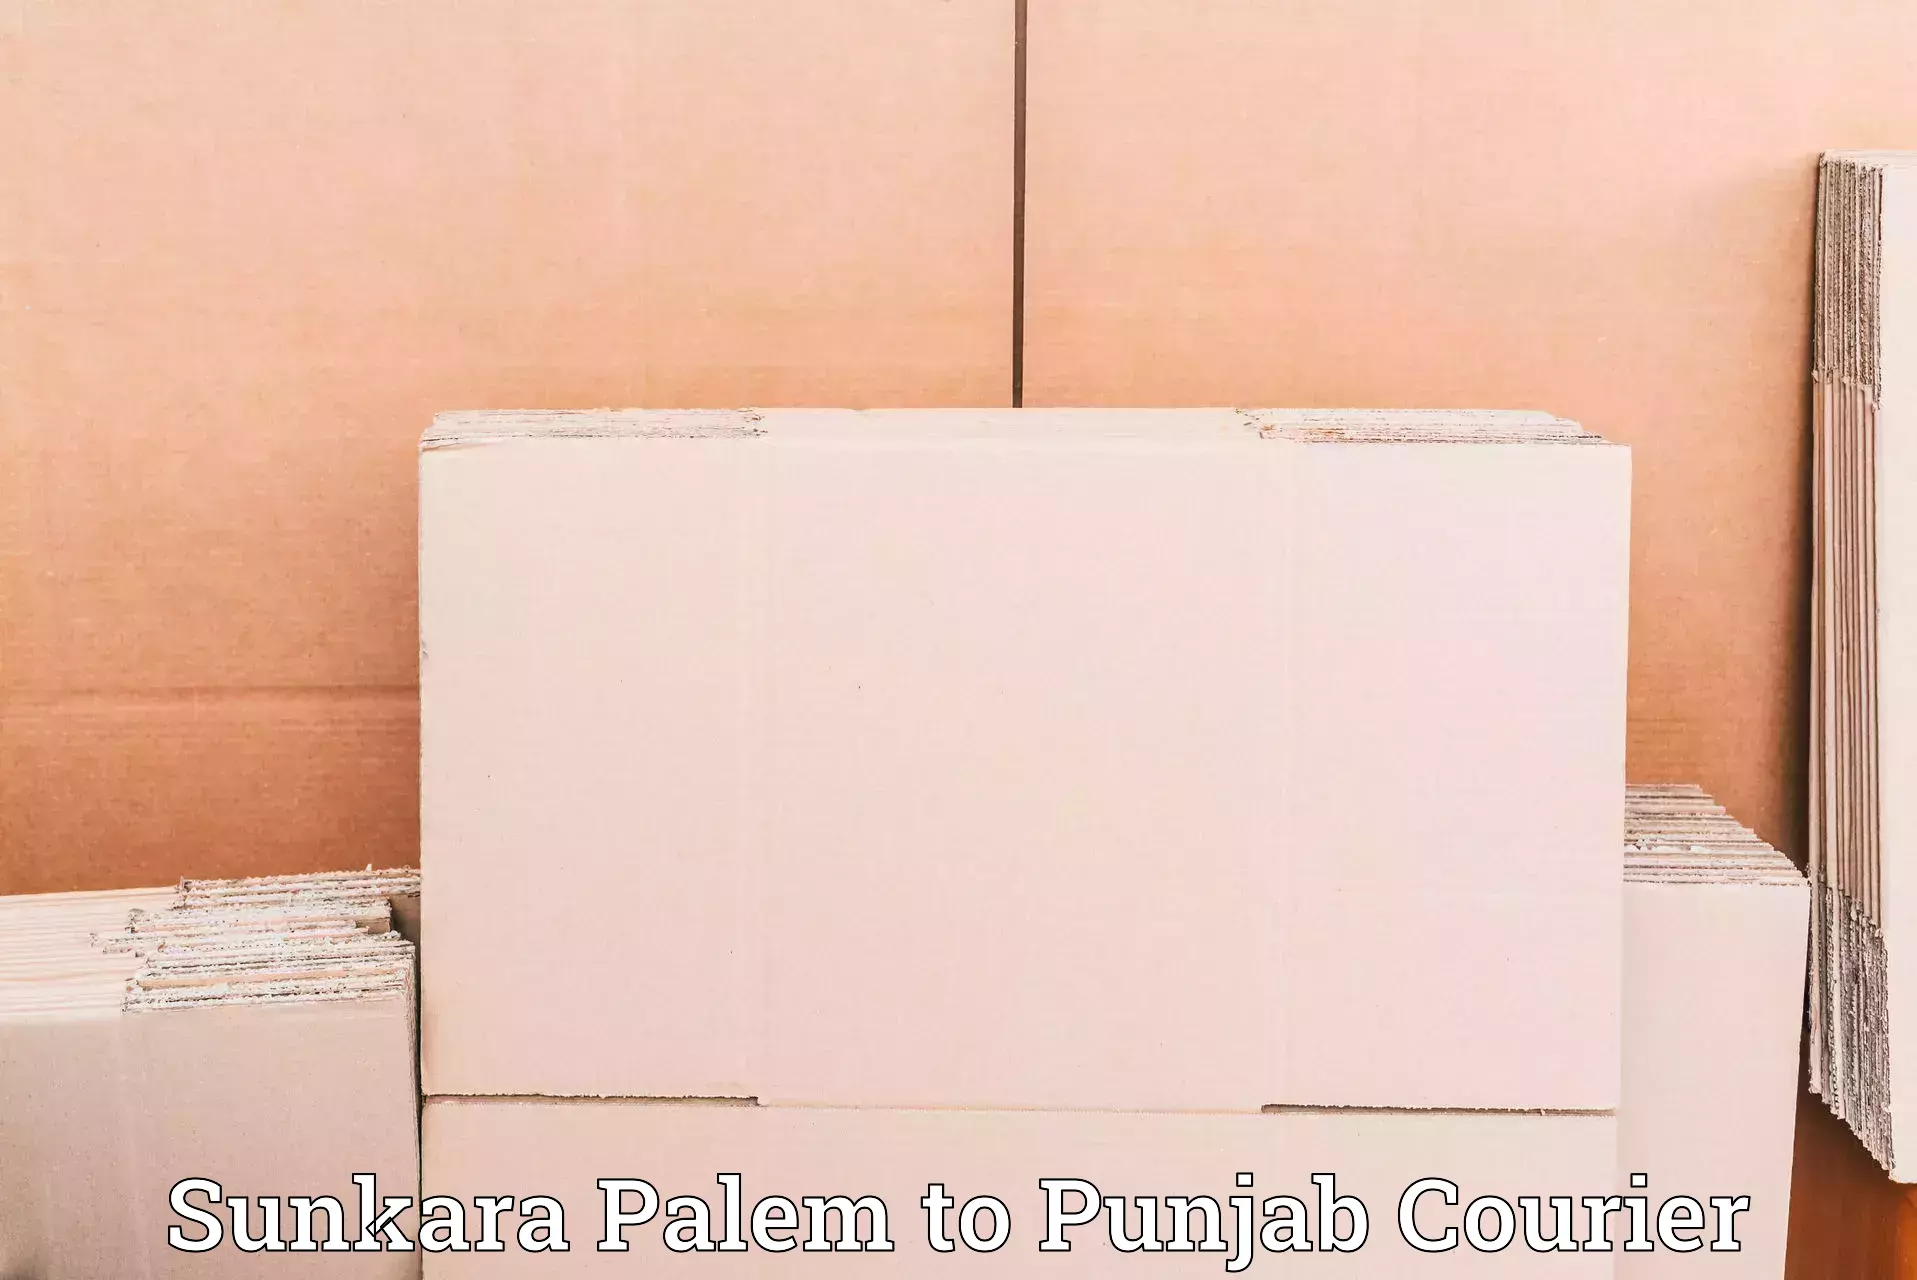 Track and trace shipping Sunkara Palem to Punjab